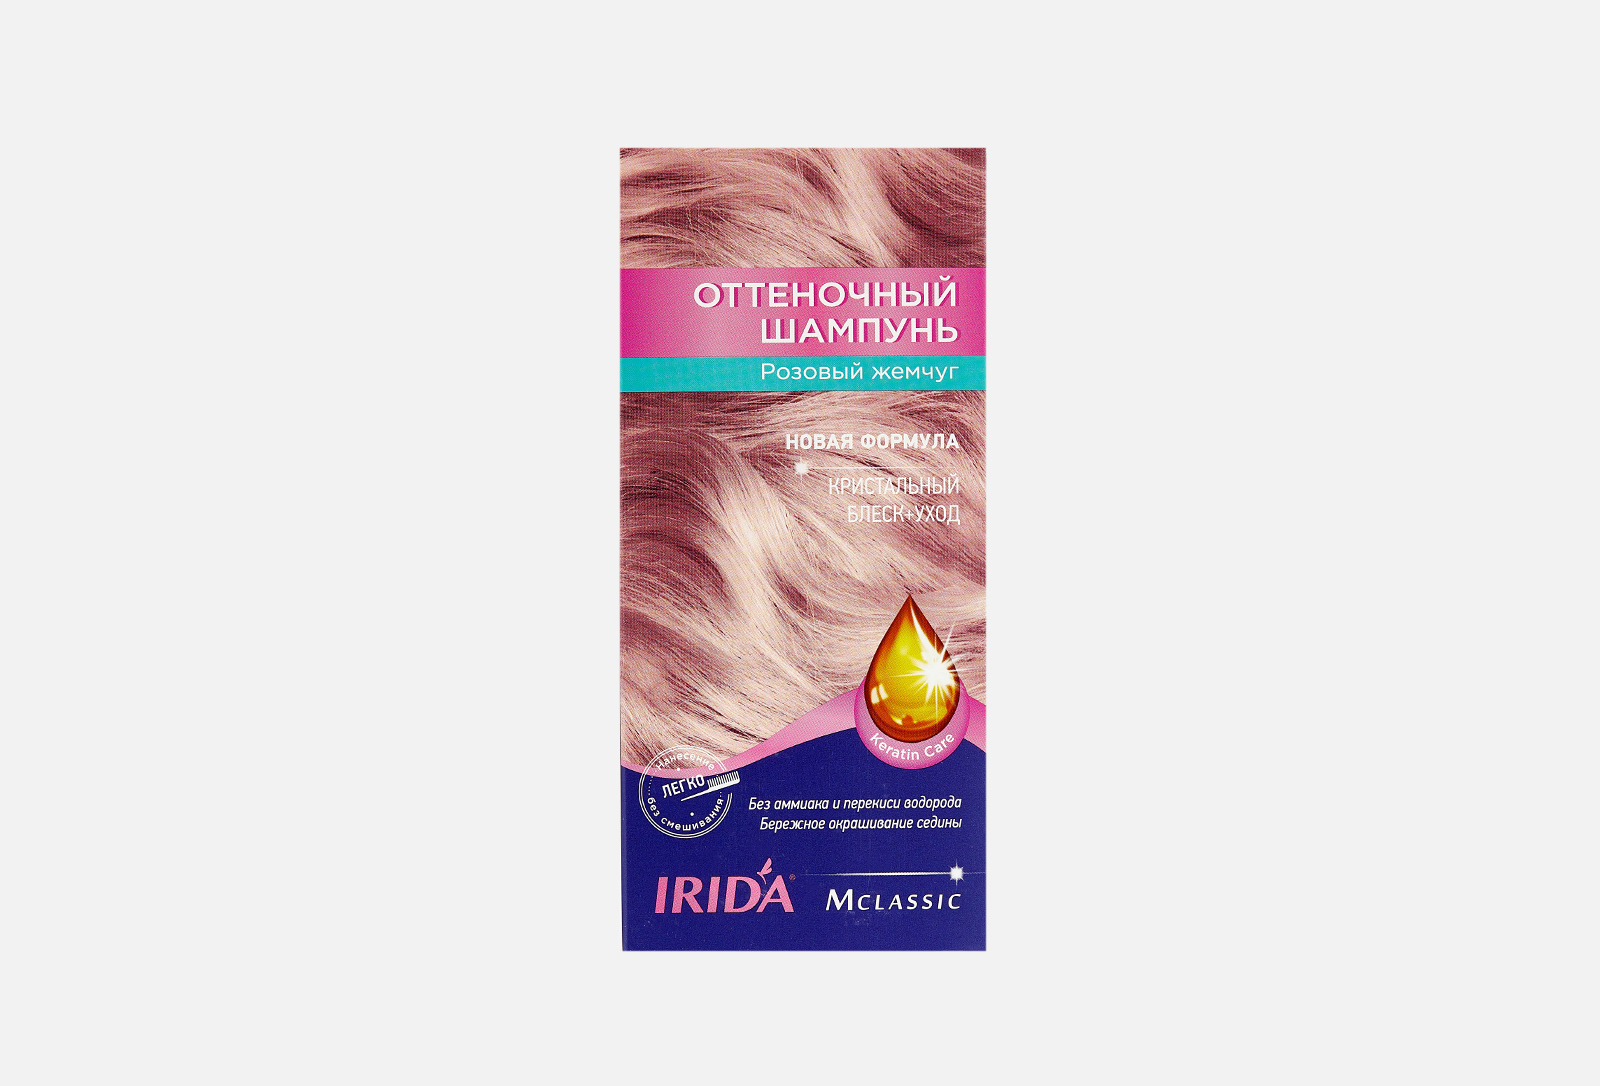 Оттеночный шампунь для волос Ирида. Ирида оттеночный шампунь розовый жемчуг. Irida оттеночный шампунь розовый жемчуг. Ирида оттеночный шампунь розовый. Оттеночный шампунь жемчужный